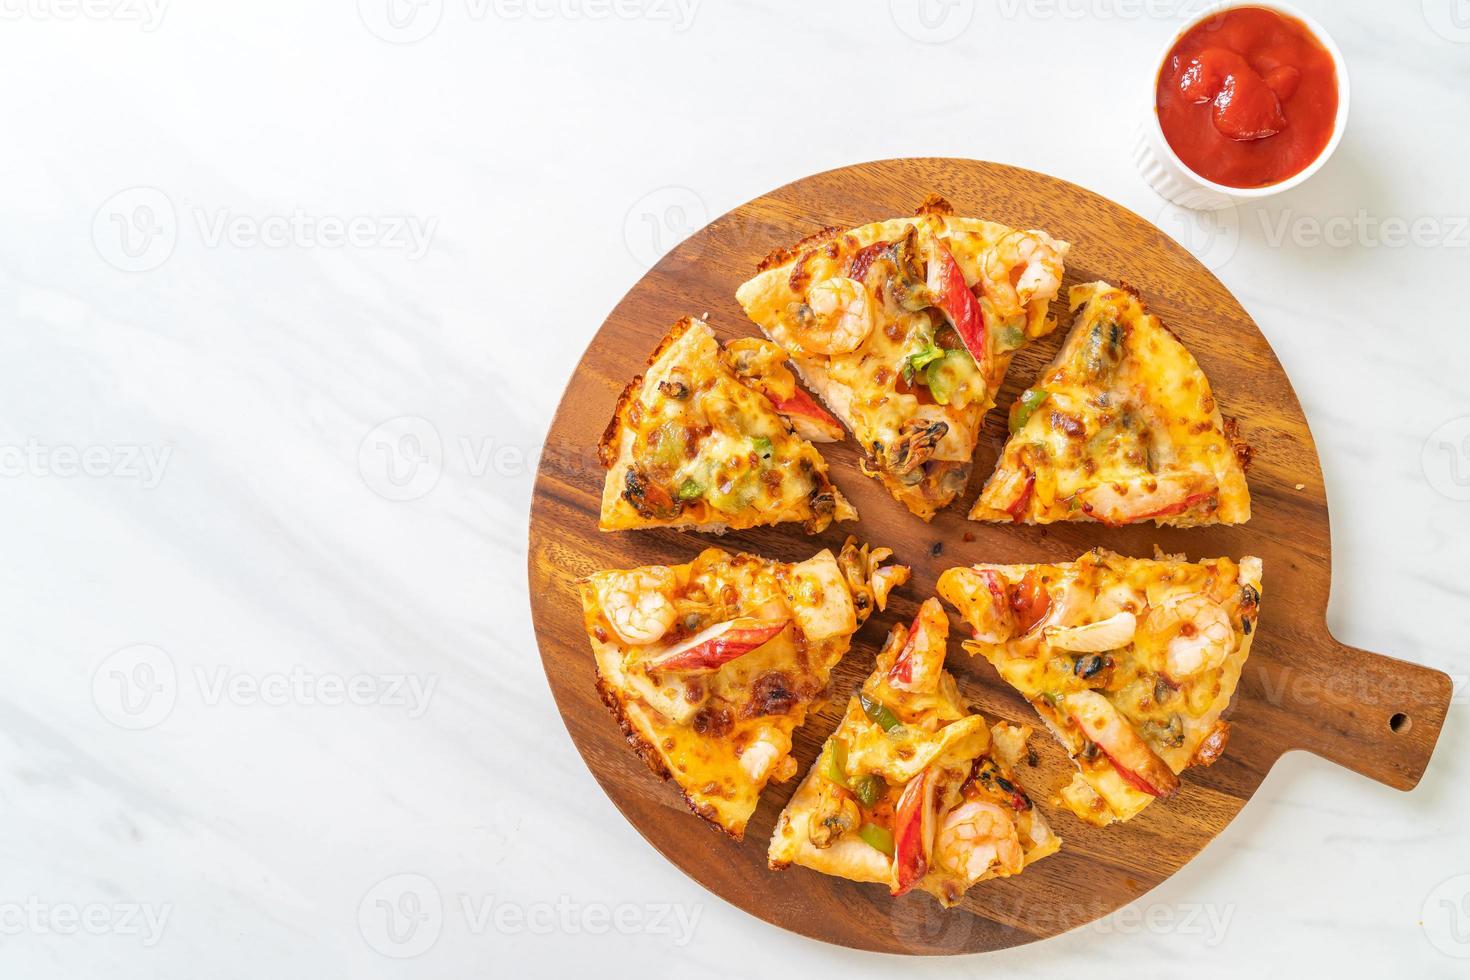 Mariscos de camarones, pulpo, mejillones y pizza de cangrejo en bandeja de madera foto